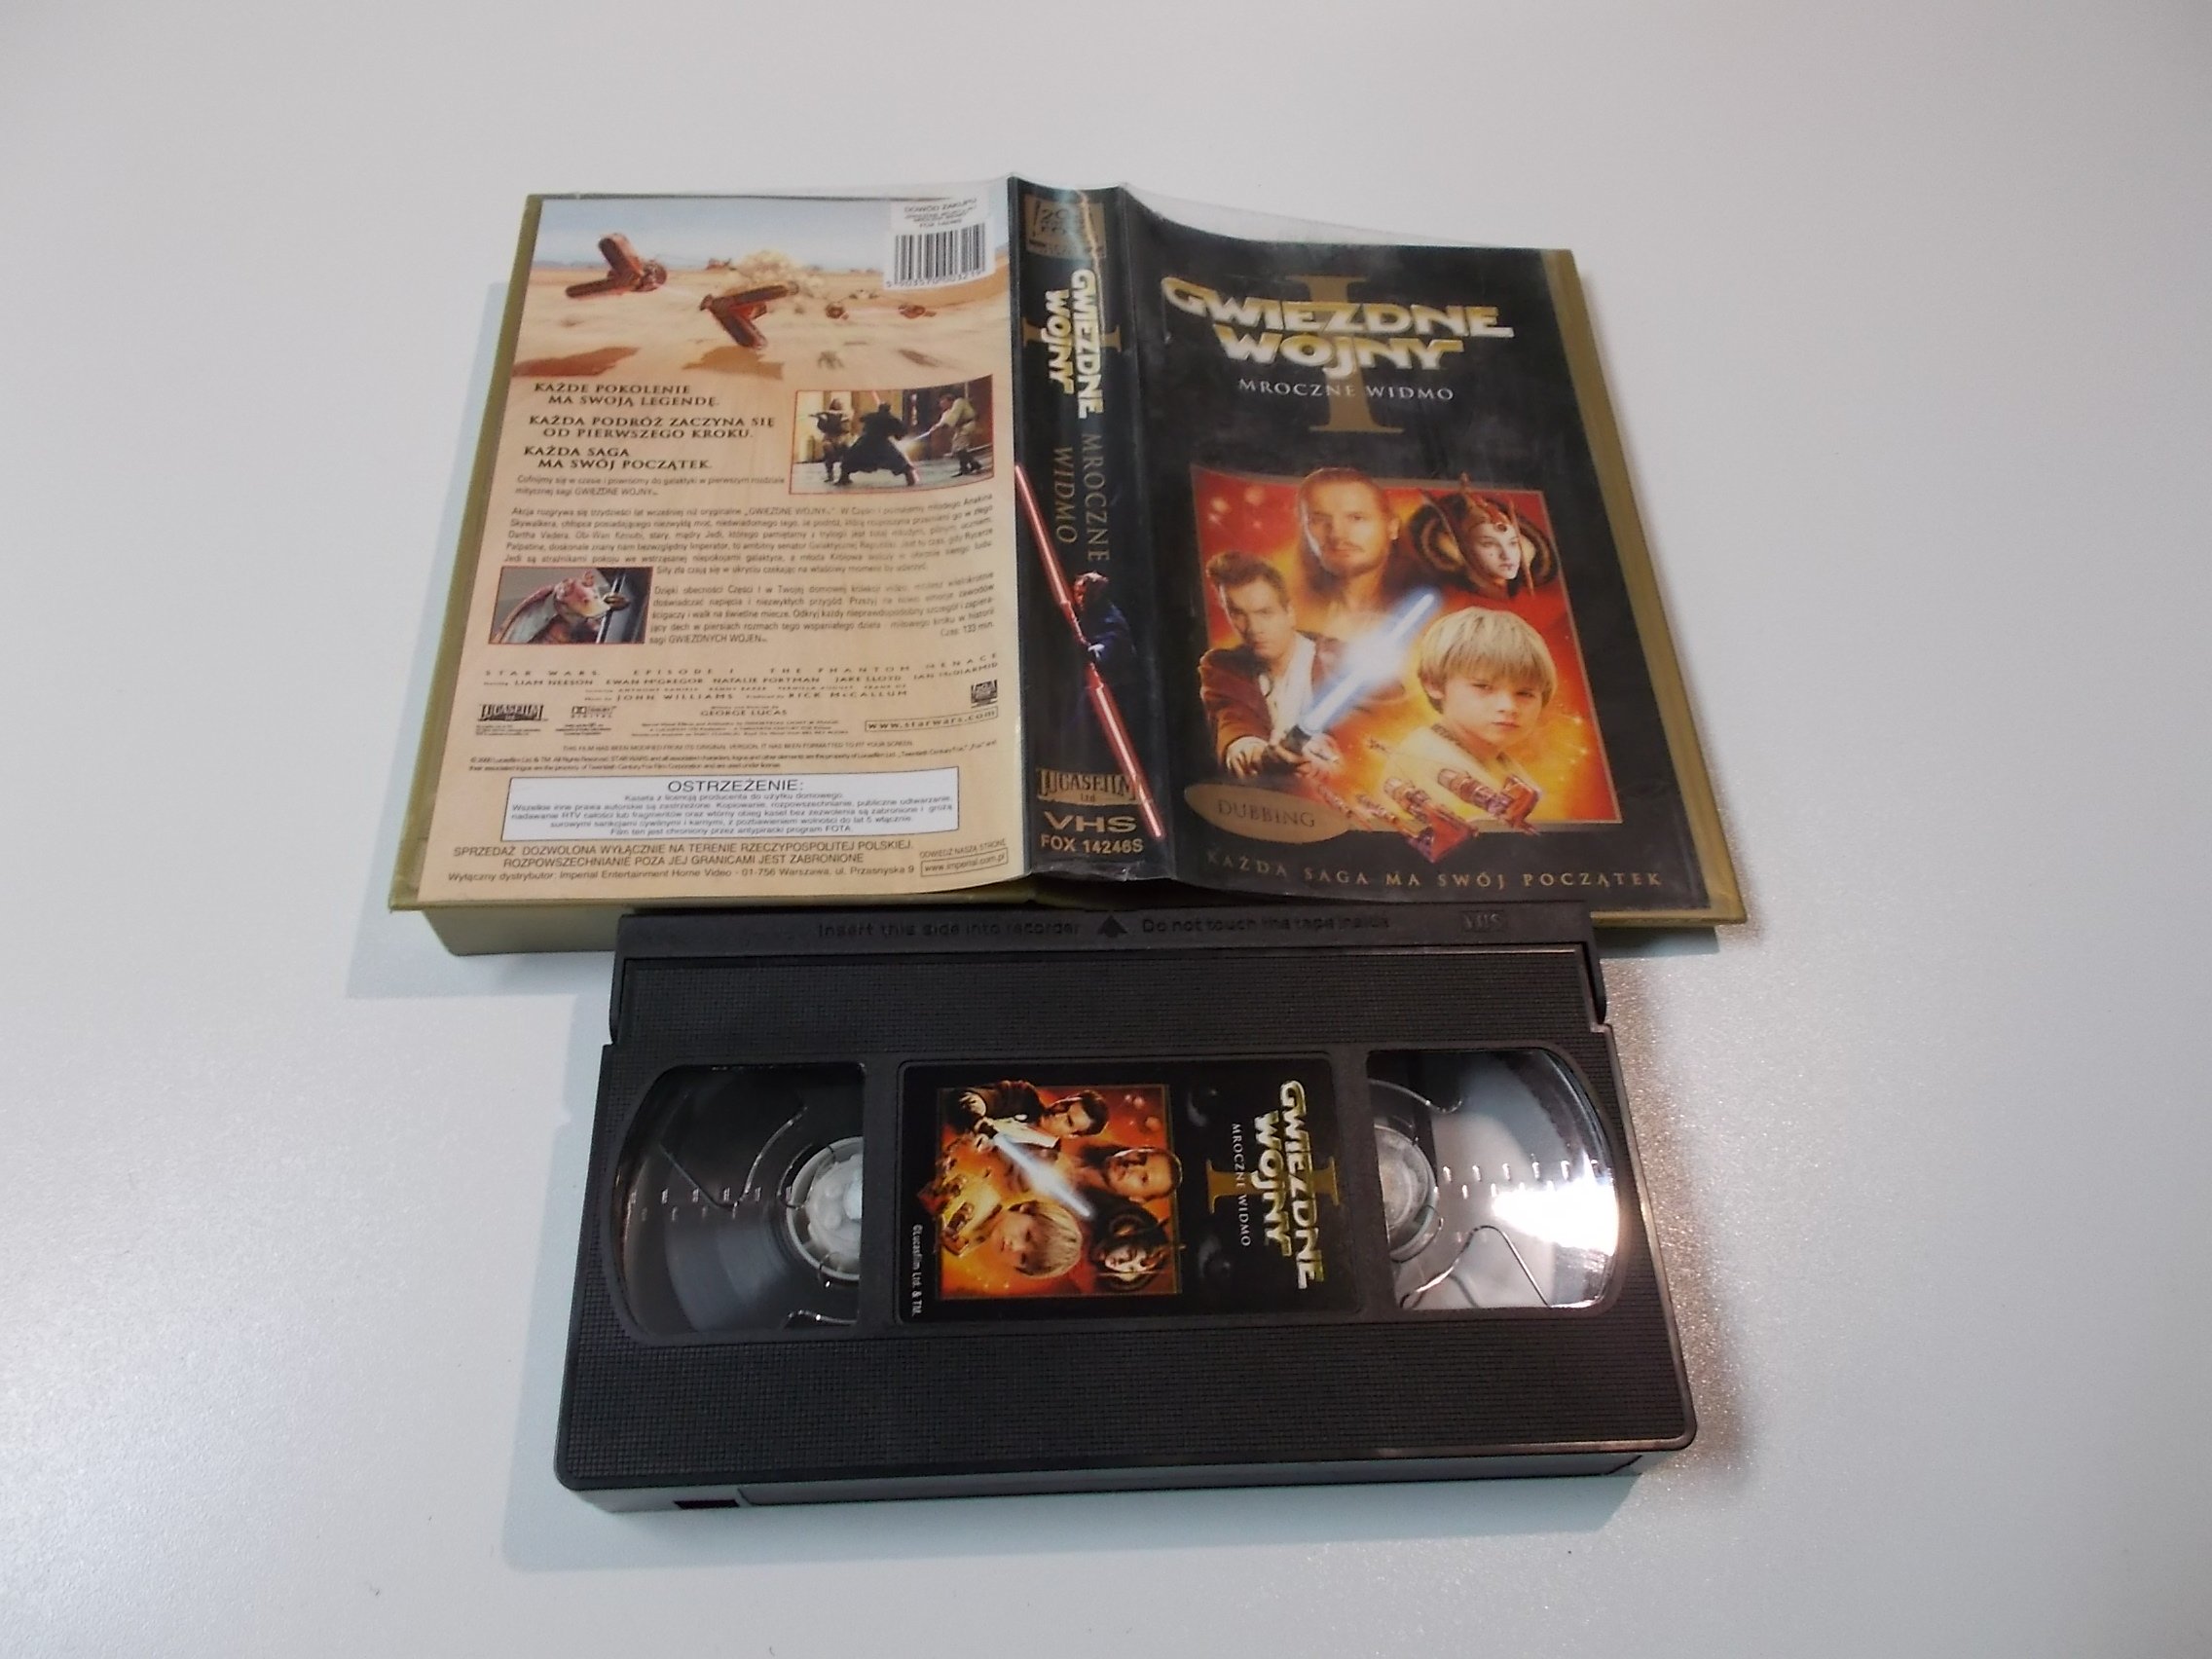 Gwiezdne Wojny: I MROCZNE WIDMO - Kaseta Video VHS - 1489 Opole - AlleOpole.pl